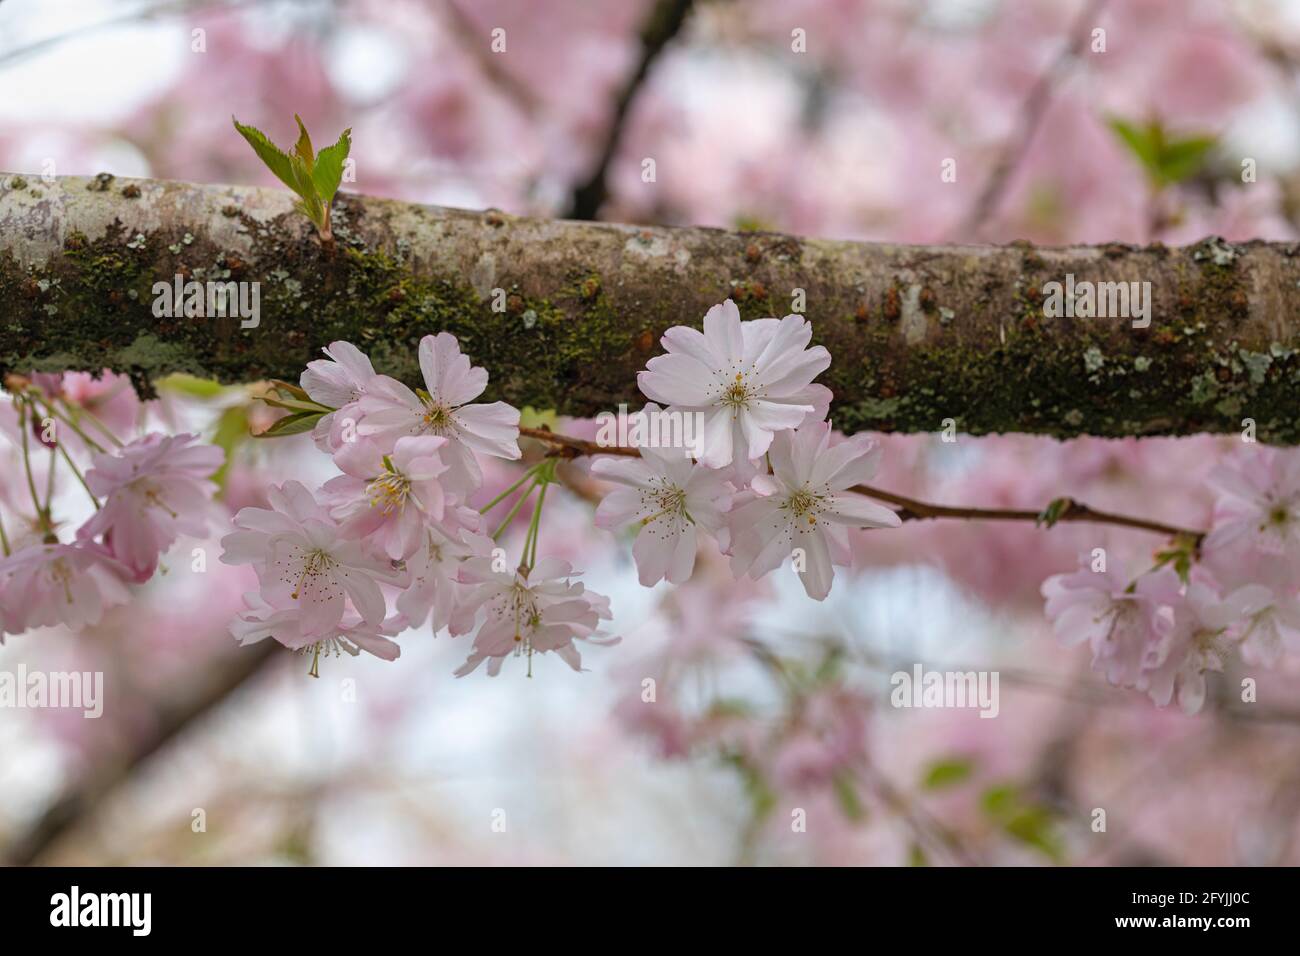 Gros plan sur la floraison des cerisiers en cerisier Prunus Accolade au printemps, Angleterre, Royaume-Uni Banque D'Images